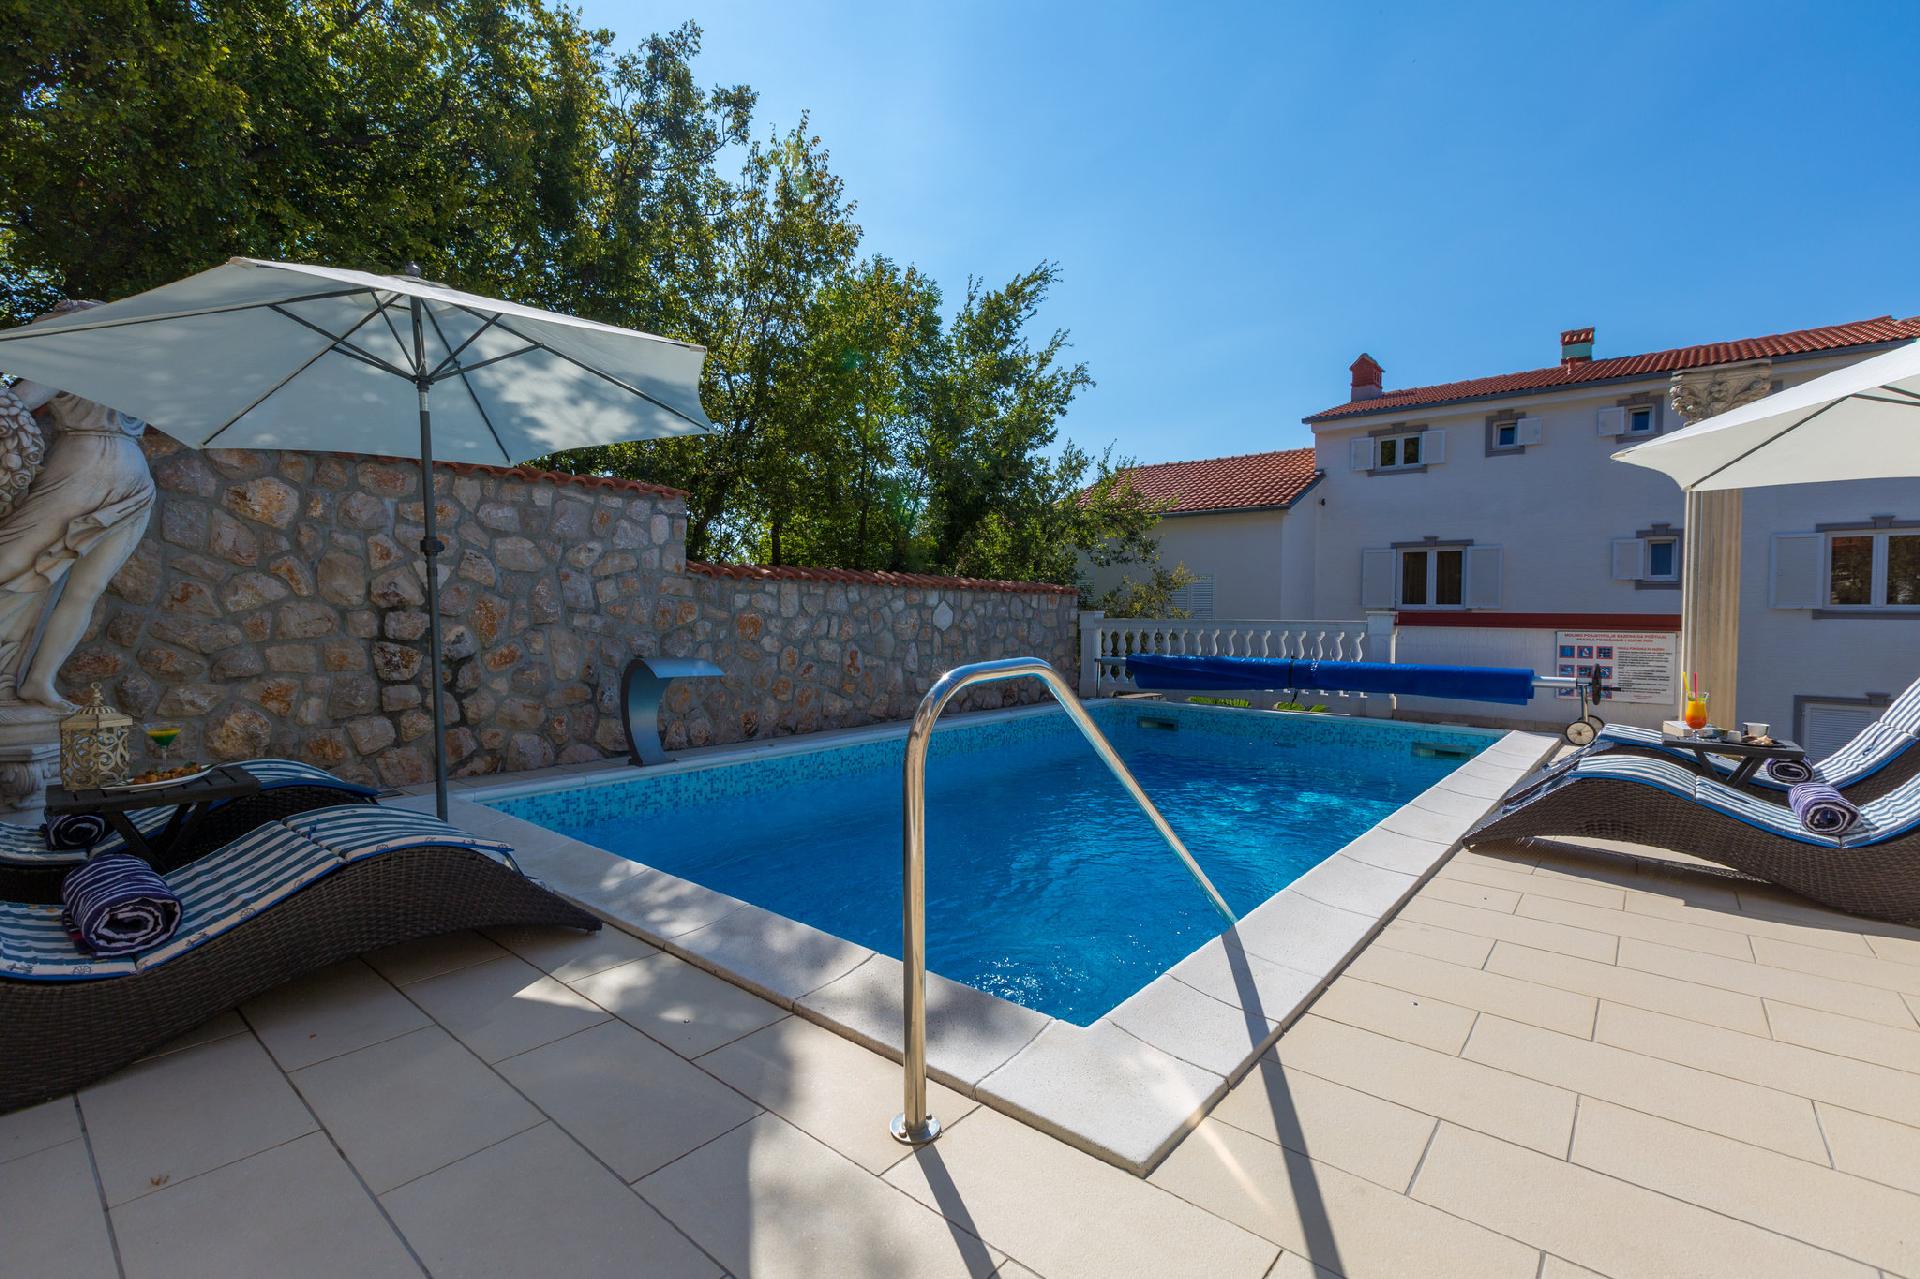 Ferienwohnung für 4 Personen ca. 97 m² i  in Kroatien